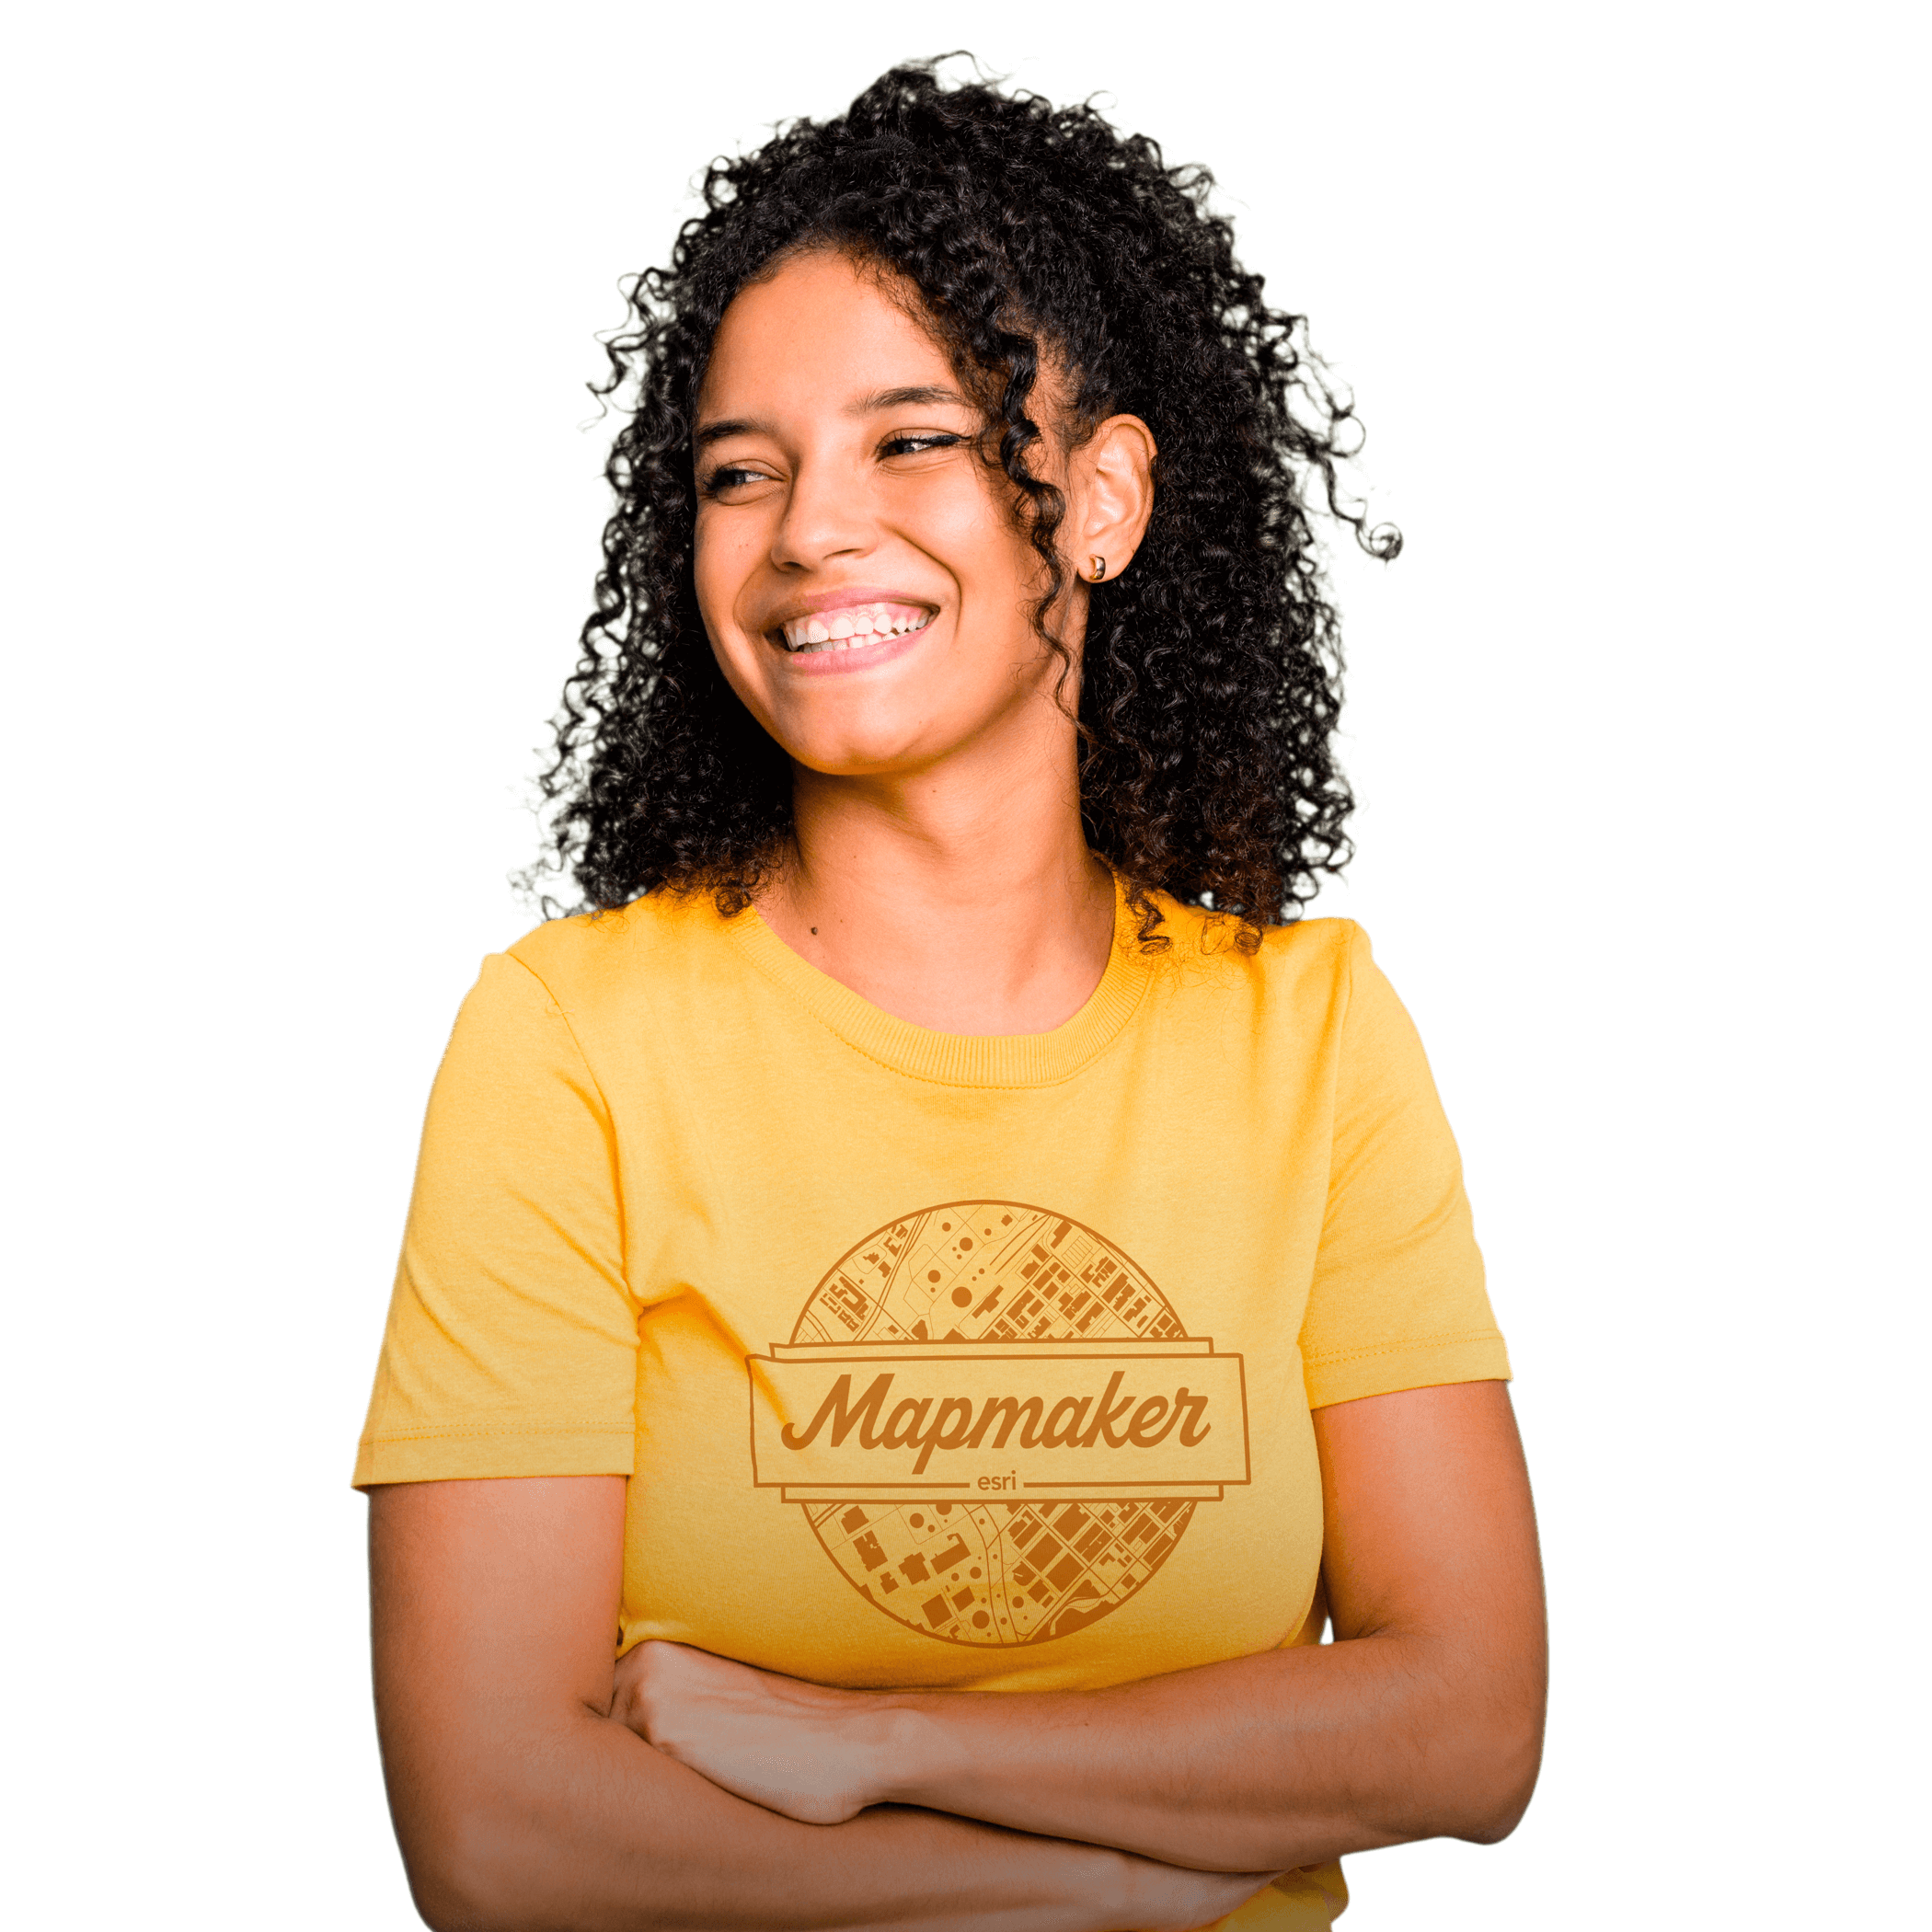 Lachende Person, die ein gelbes T-Shirt mit dem Slogan "Mapmaker" trägt und vor einem abstrakten geometrischen Hintergrund mit blauen, roten und gelben Elementen steht